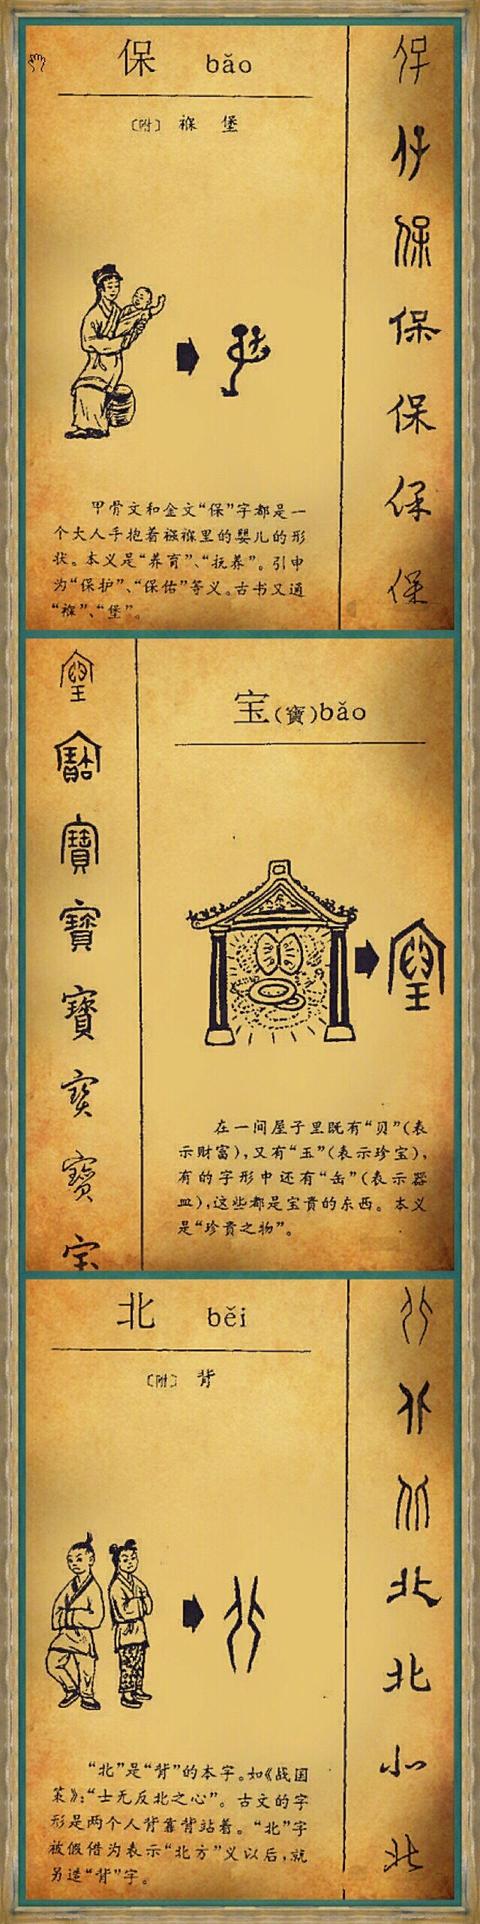 汉字的发展史时间轴（6000年的成长轨迹汉字演变集萃）(3)